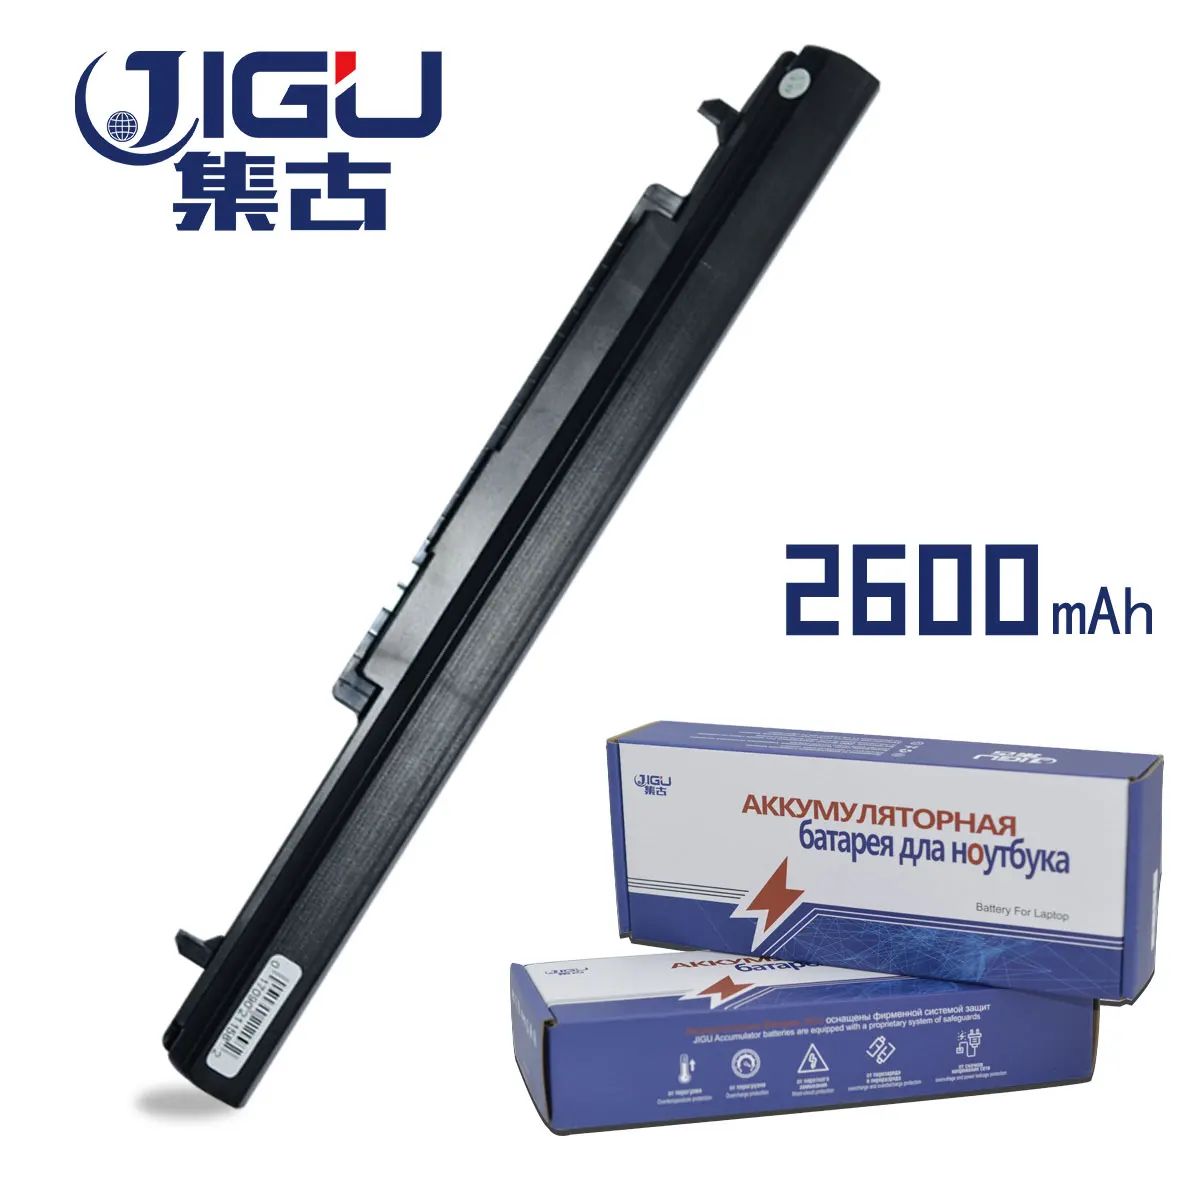 JIGU Nešiojamas Baterija Asus S550C S56C U48C V550C A32-K56 A41-K56 E46C K46C K56C R405C R505C S405C S46C S505C A42-K56 A46C